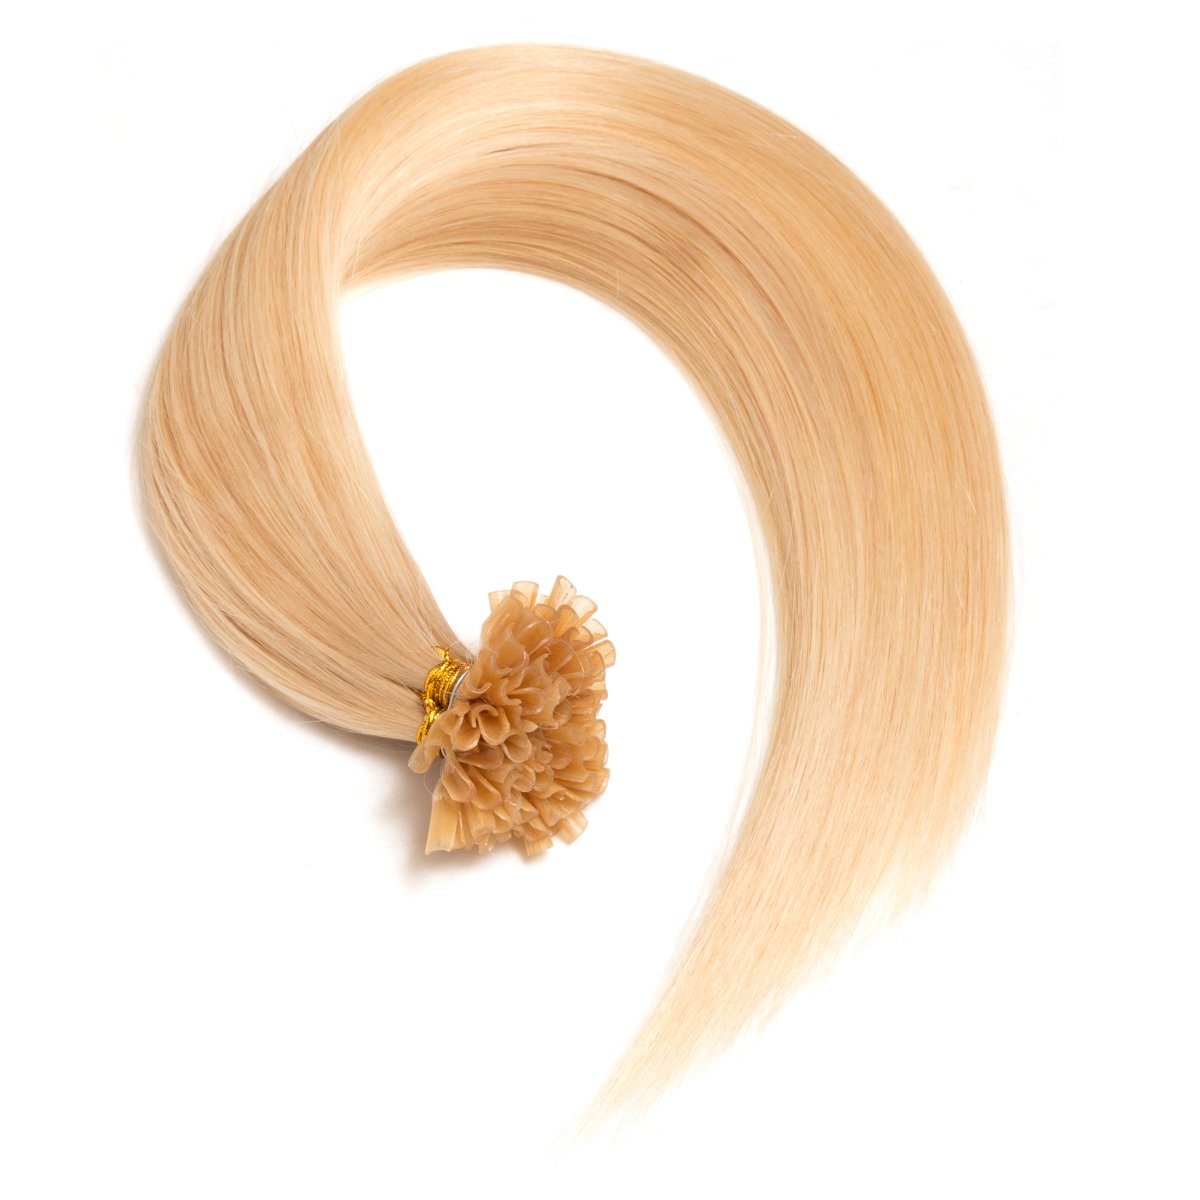 Weißblonde Keratin Bonding Extensions aus 100% Remy Echthaar/Human Hair 50 0,5g 50cm Glatte Strähnen - U-Tip als Haarverlängerung und Haarverdichtung - Farbe: #60 Weißblond